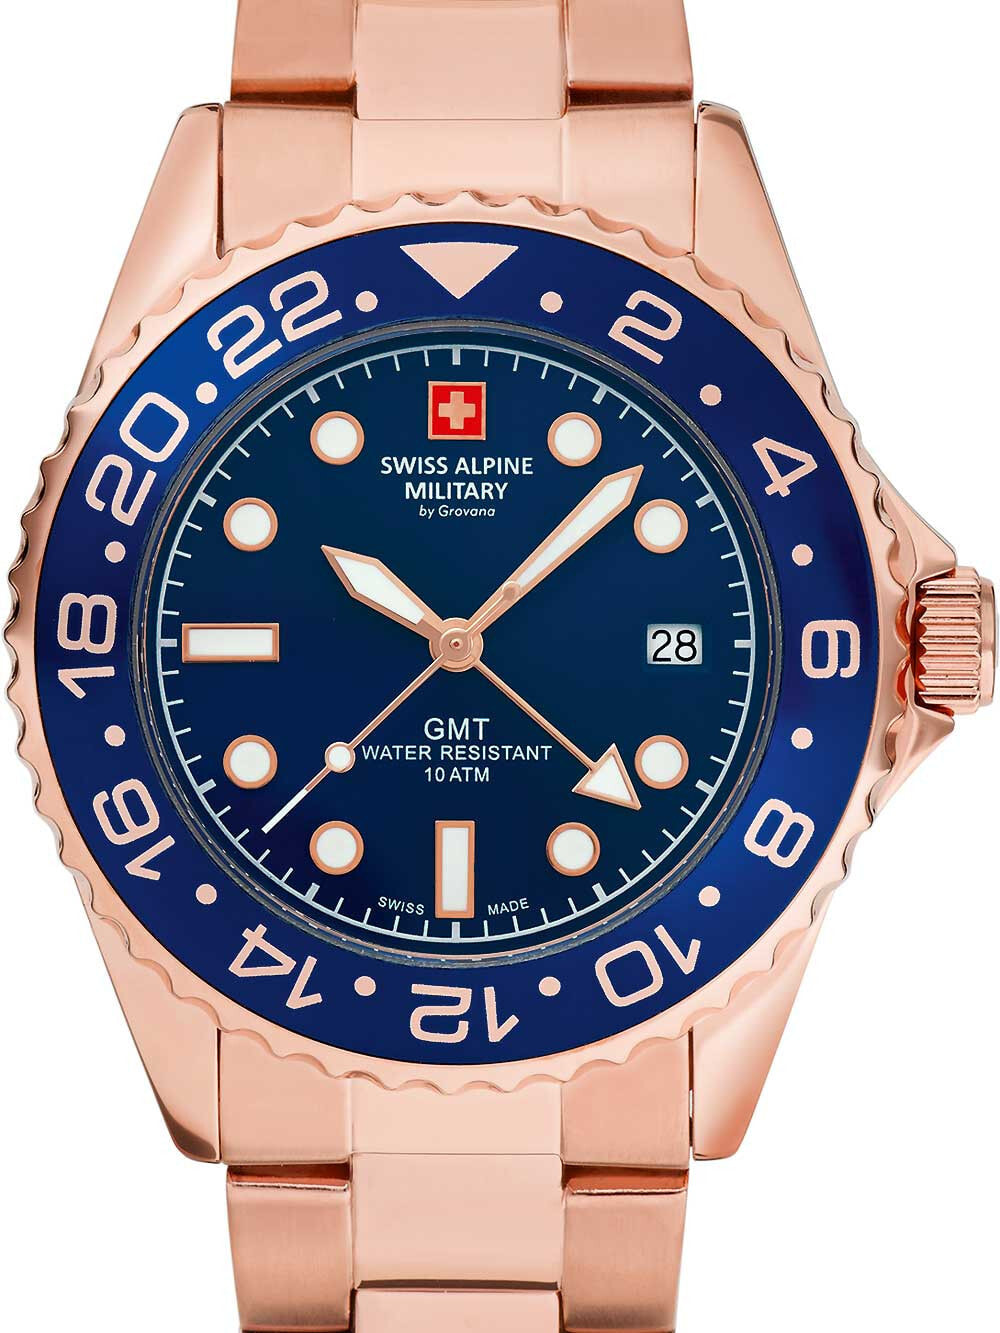 Мужские наручные часы с золотистым браслетом Swiss Alpine Military 7052.1165 GMT diver 42mm 10ATM